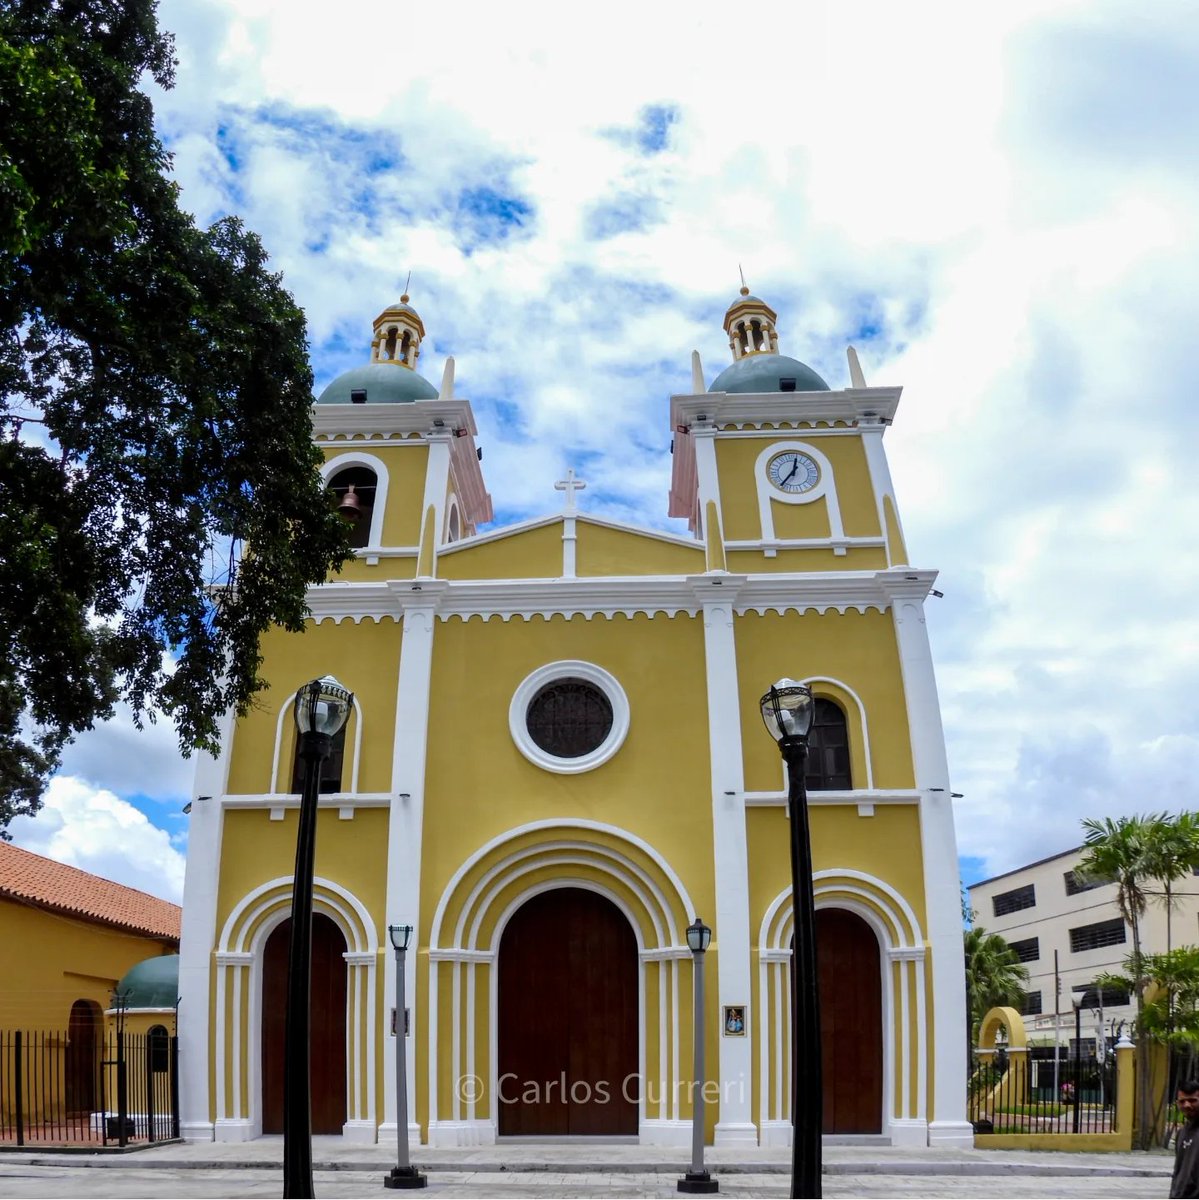 El 14 de mayo de 1782 se eleva a parroquia eclesiástica #Naguanagua y un año luego se inicia la construcción del primer templo y en 1943 la construcción del segundo templo uno al lado del otro. #carabobo #valencia #Venezuela #Arquitectura #architecture #travelblogger #History